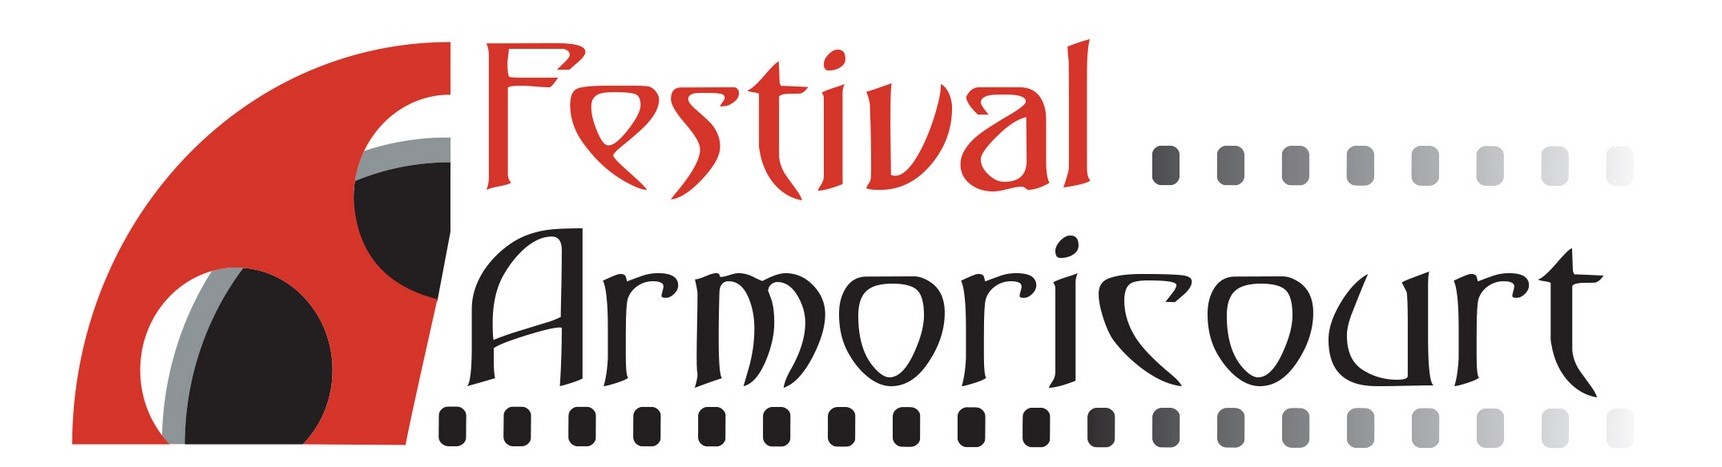 Festival Armoricourt